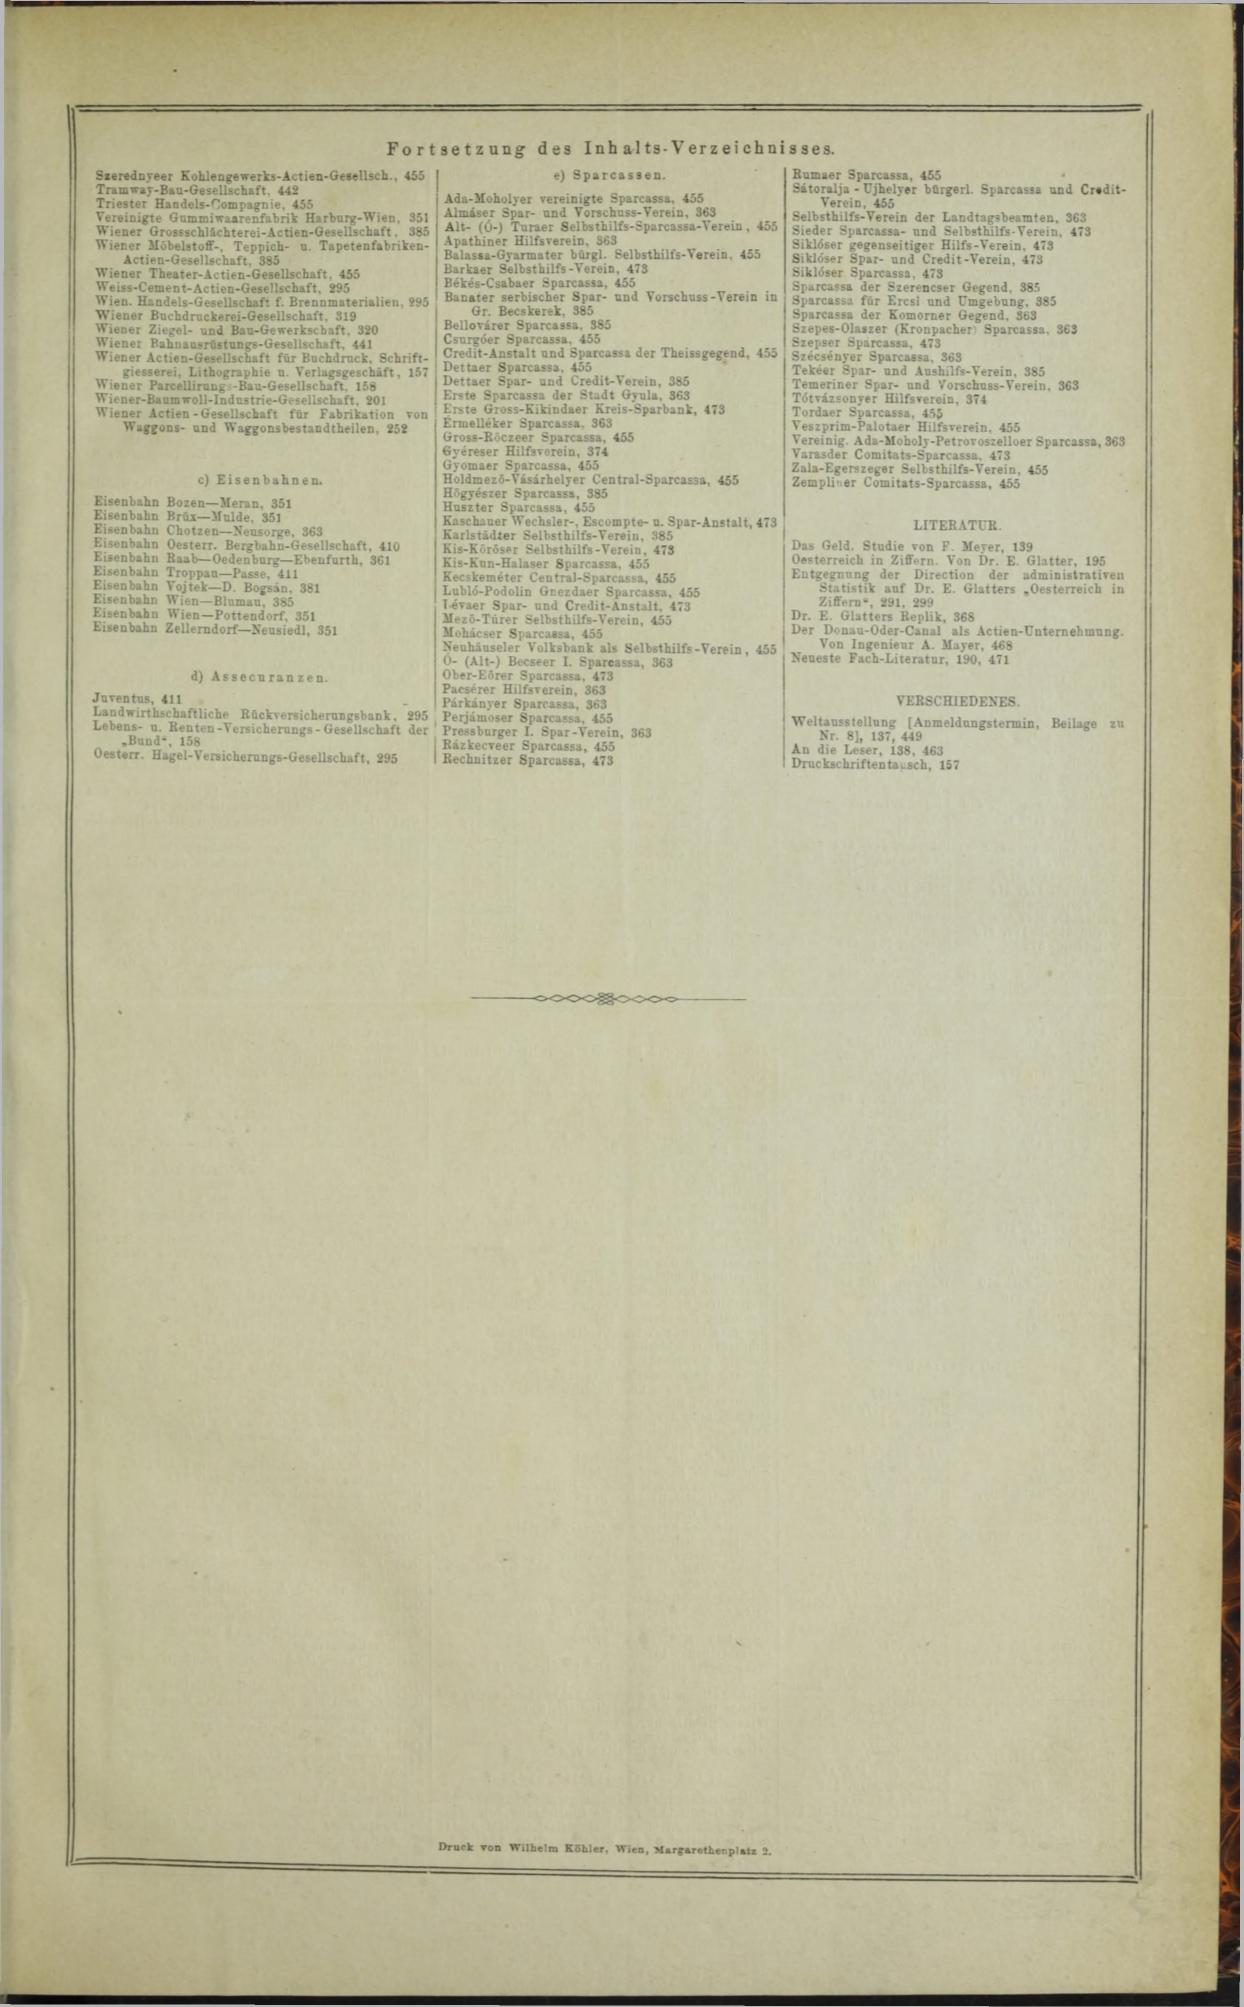 Der Tresor 28.08.1872 - Page 14